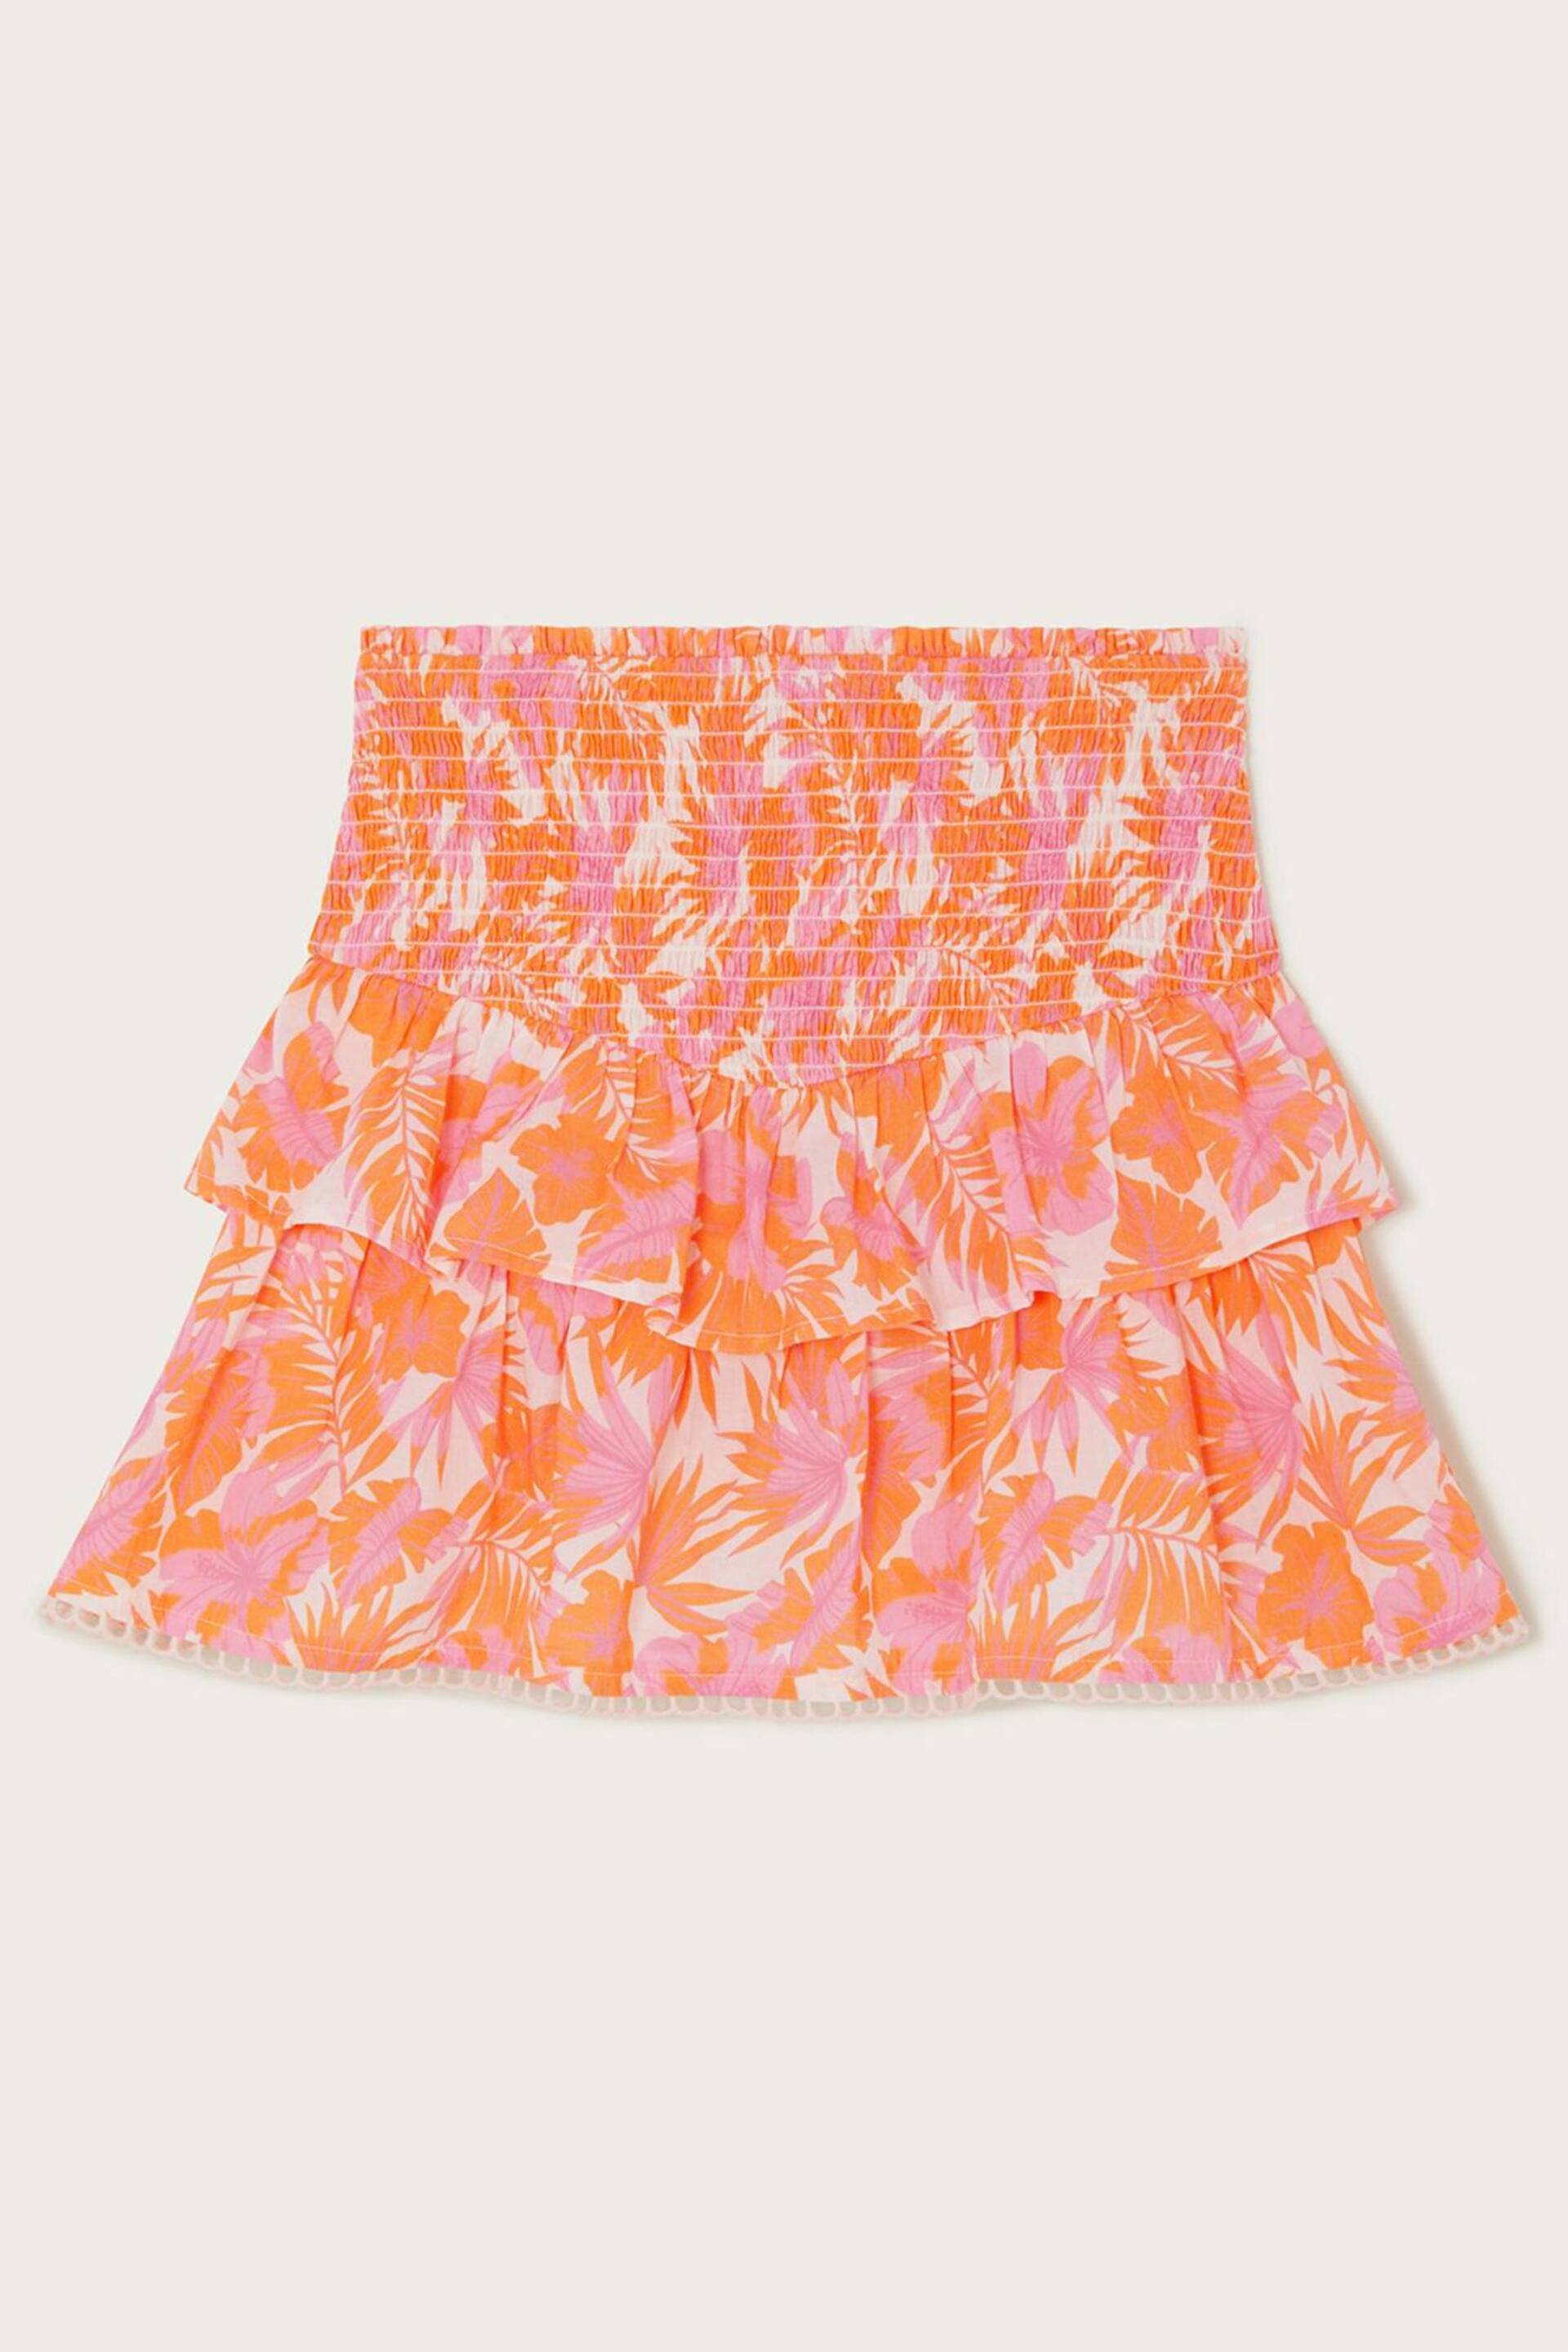 Monsoon Orange Tinashe Palm Print Skort - Image 1 of 3